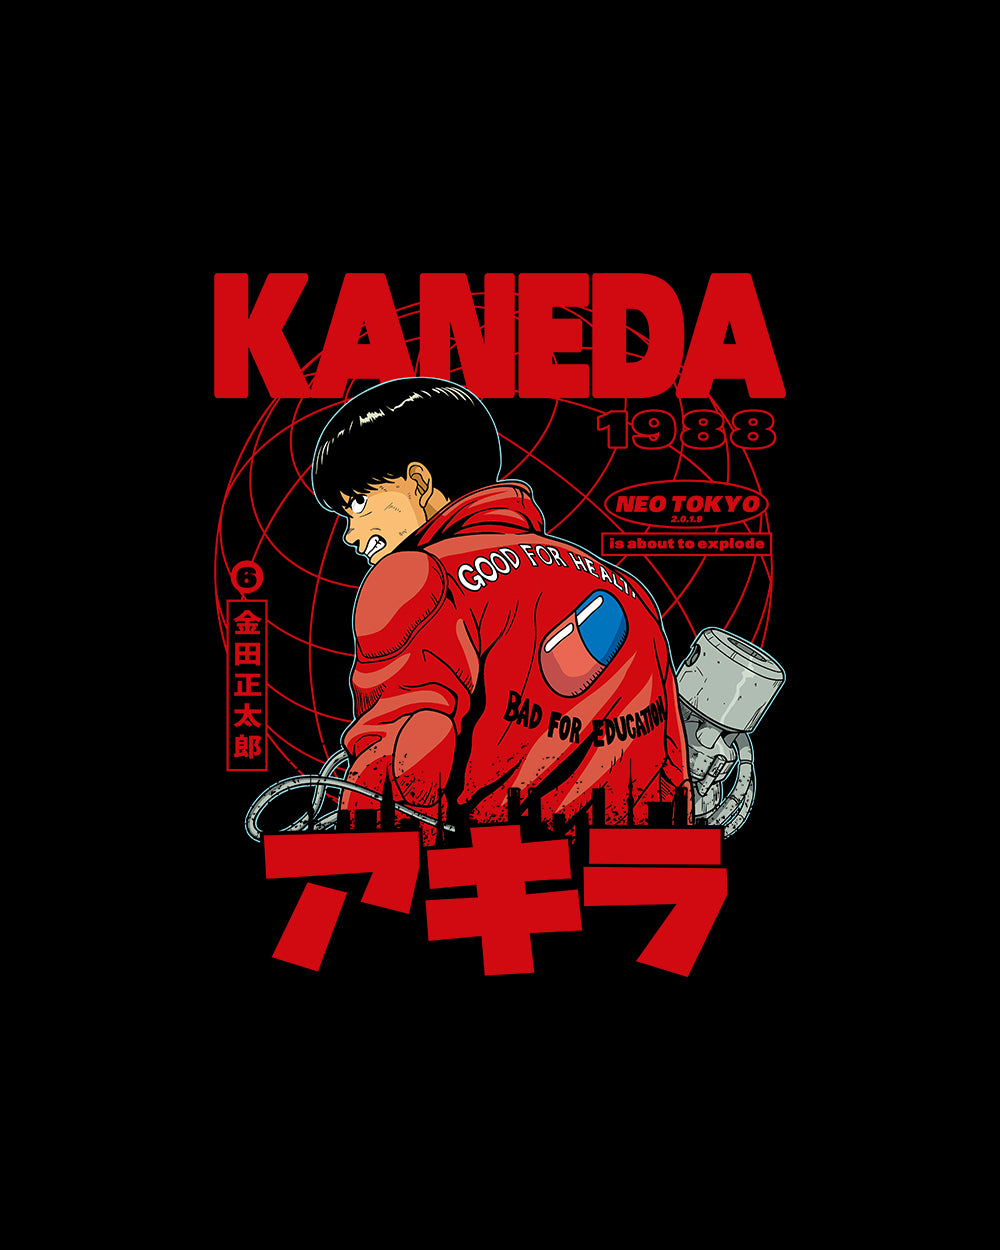 Kaneda Sweater Australia Online #colour_black